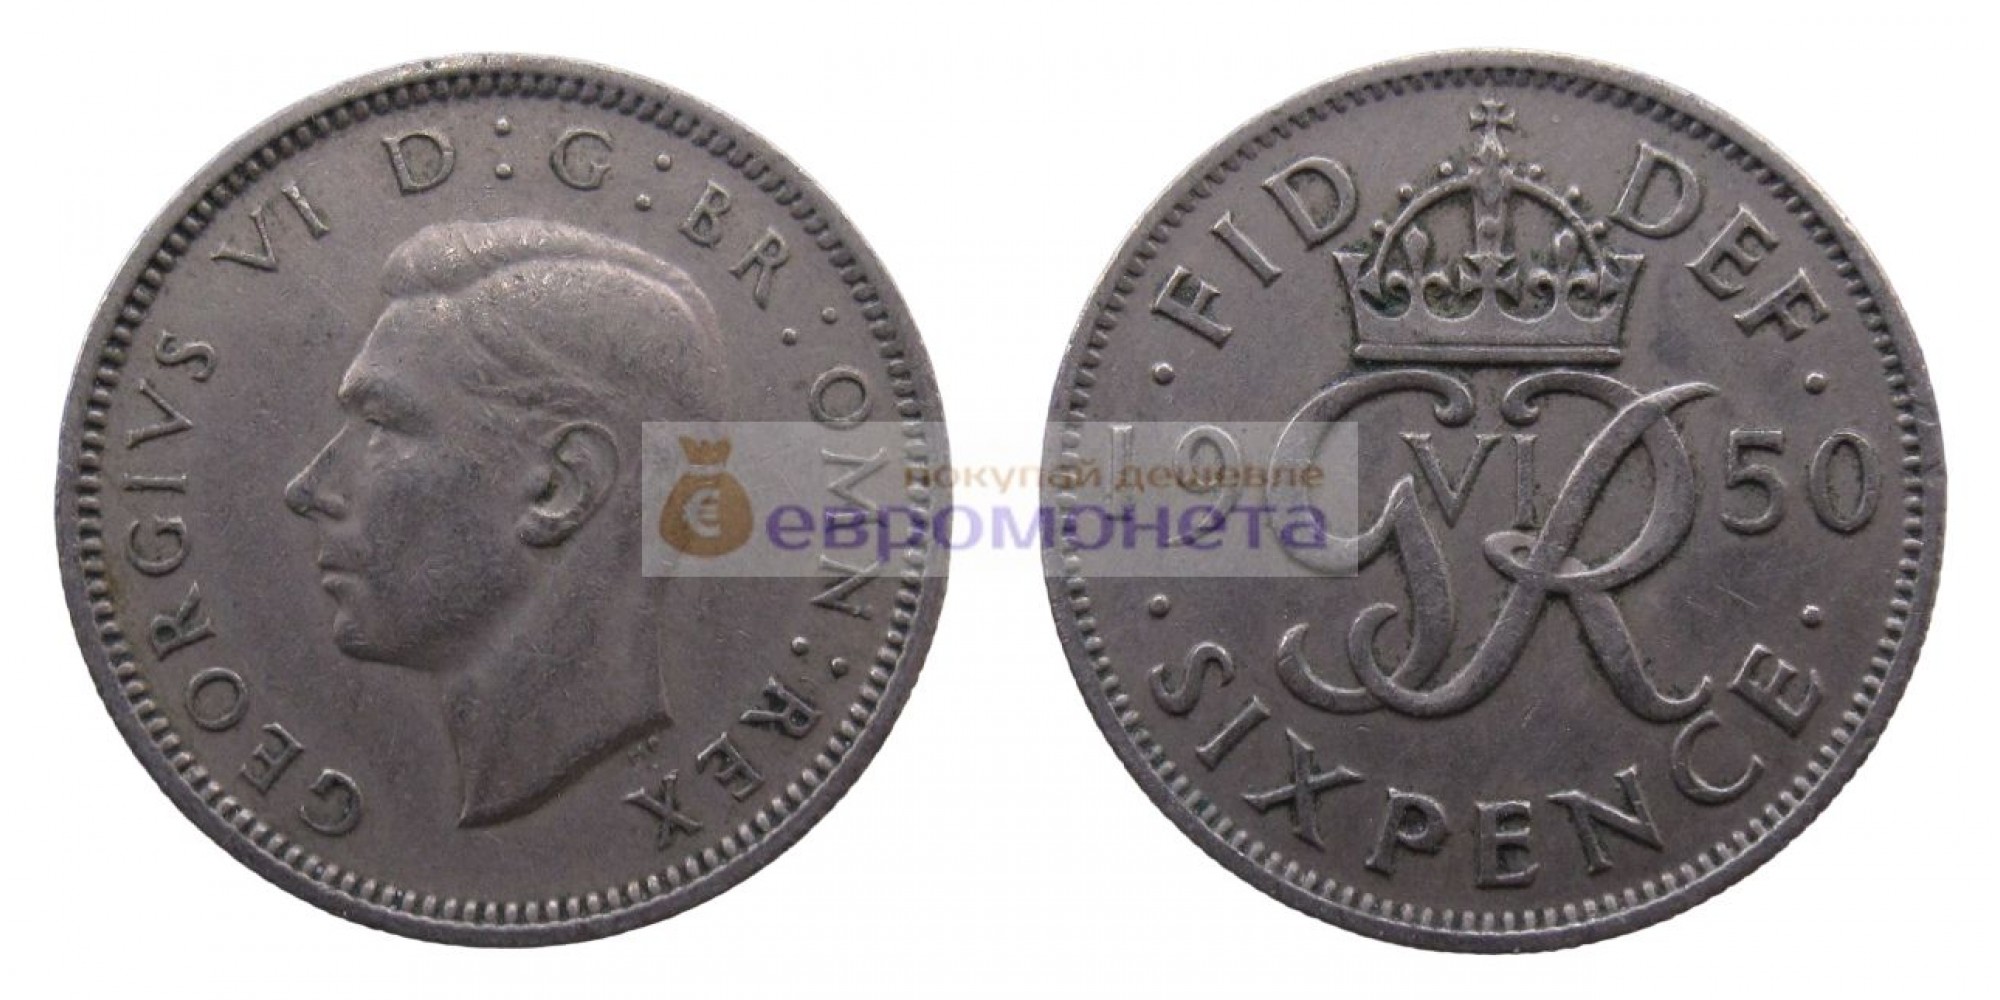 Великобритания 6 пенсов 1950 год. Король Георг VI